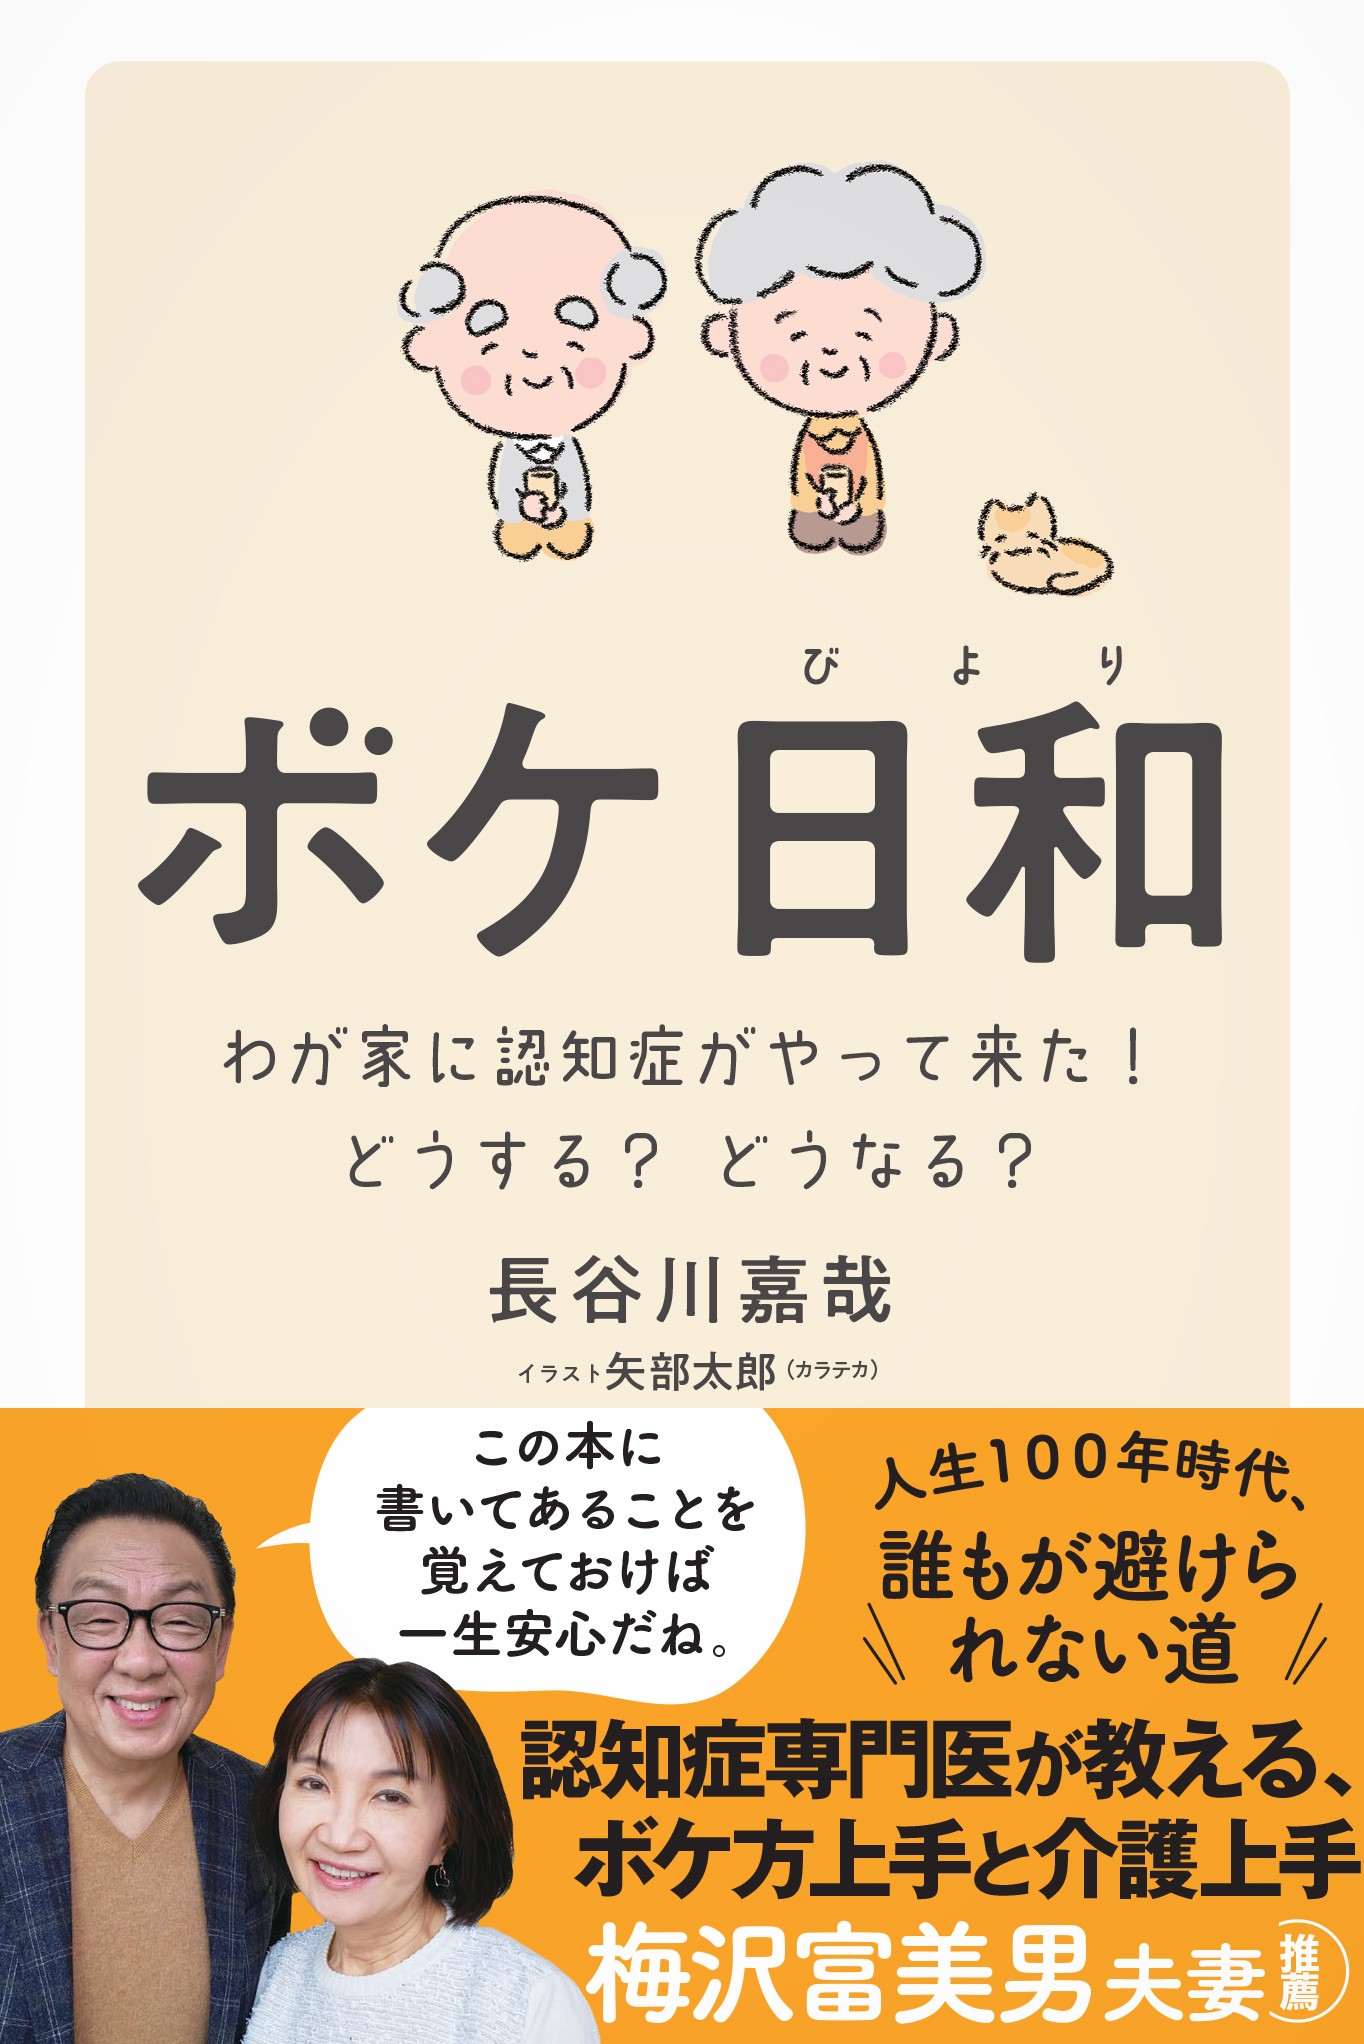 梅沢富美男夫妻が推薦 人生100年時代に備えるために 認知症専門医が家族と患者のための対処法をまとめた ボケ日和 発売 かんき出版のプレスリリース